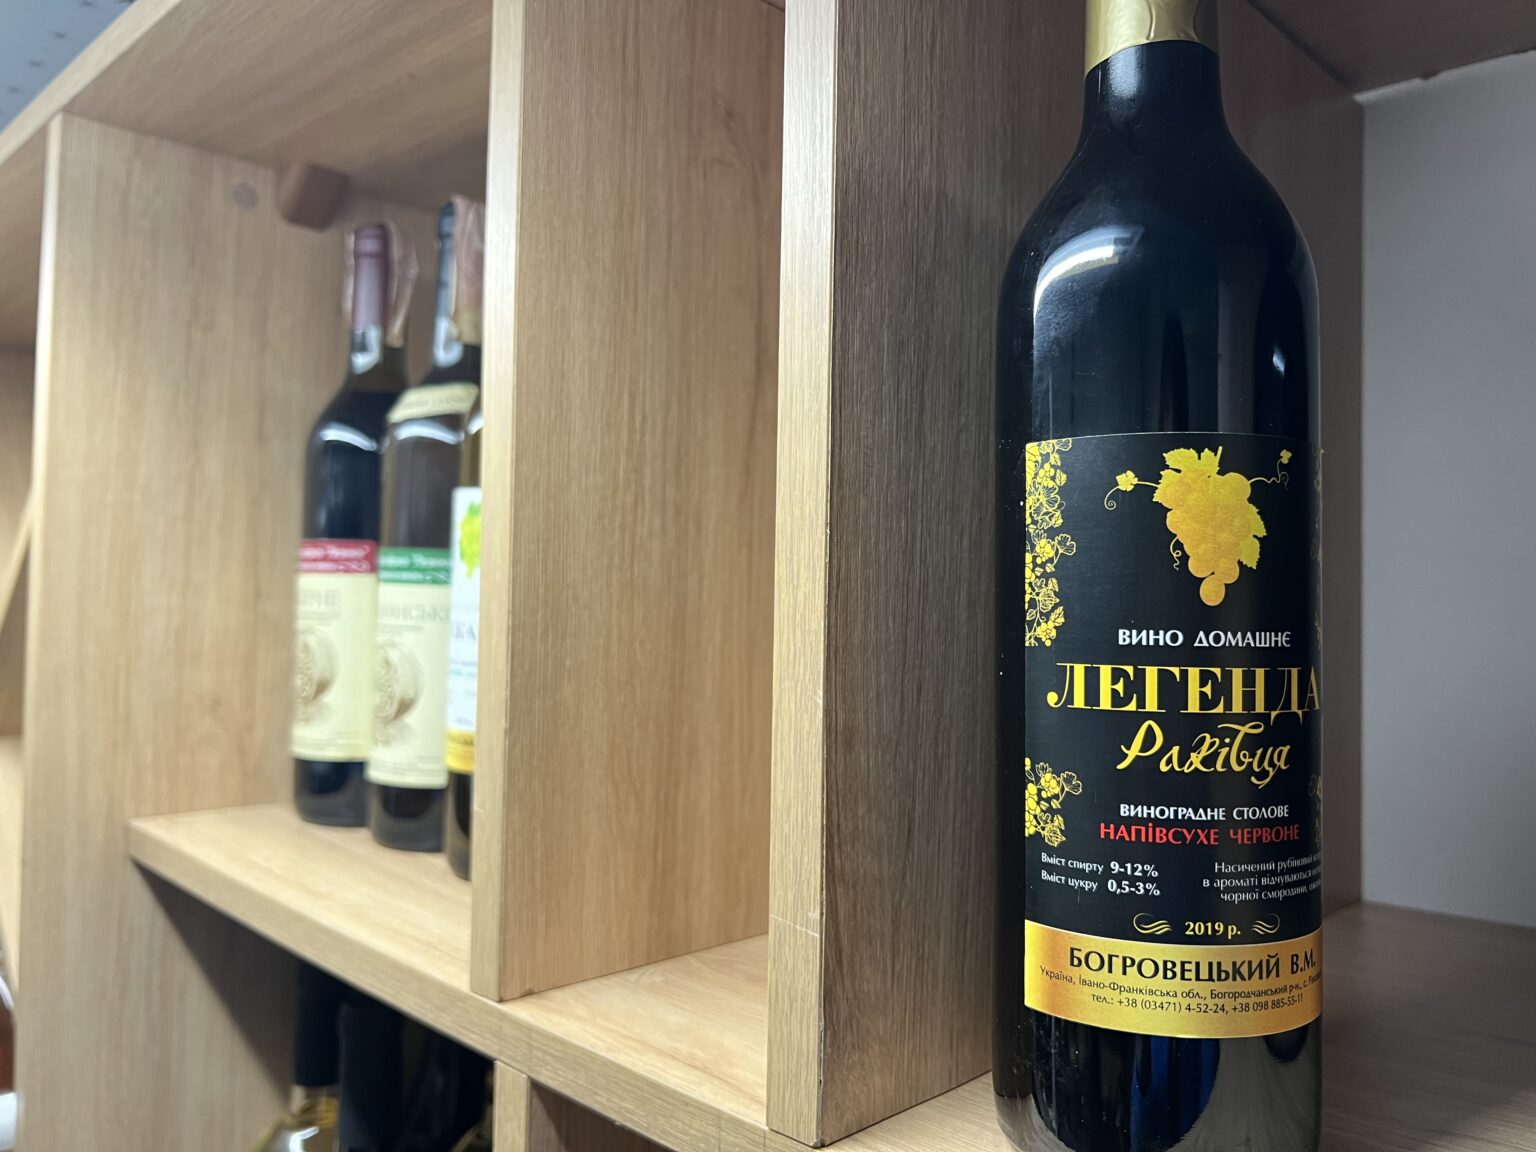 Прикарпатський виноградар розповів про користь в помірному вживанні вина